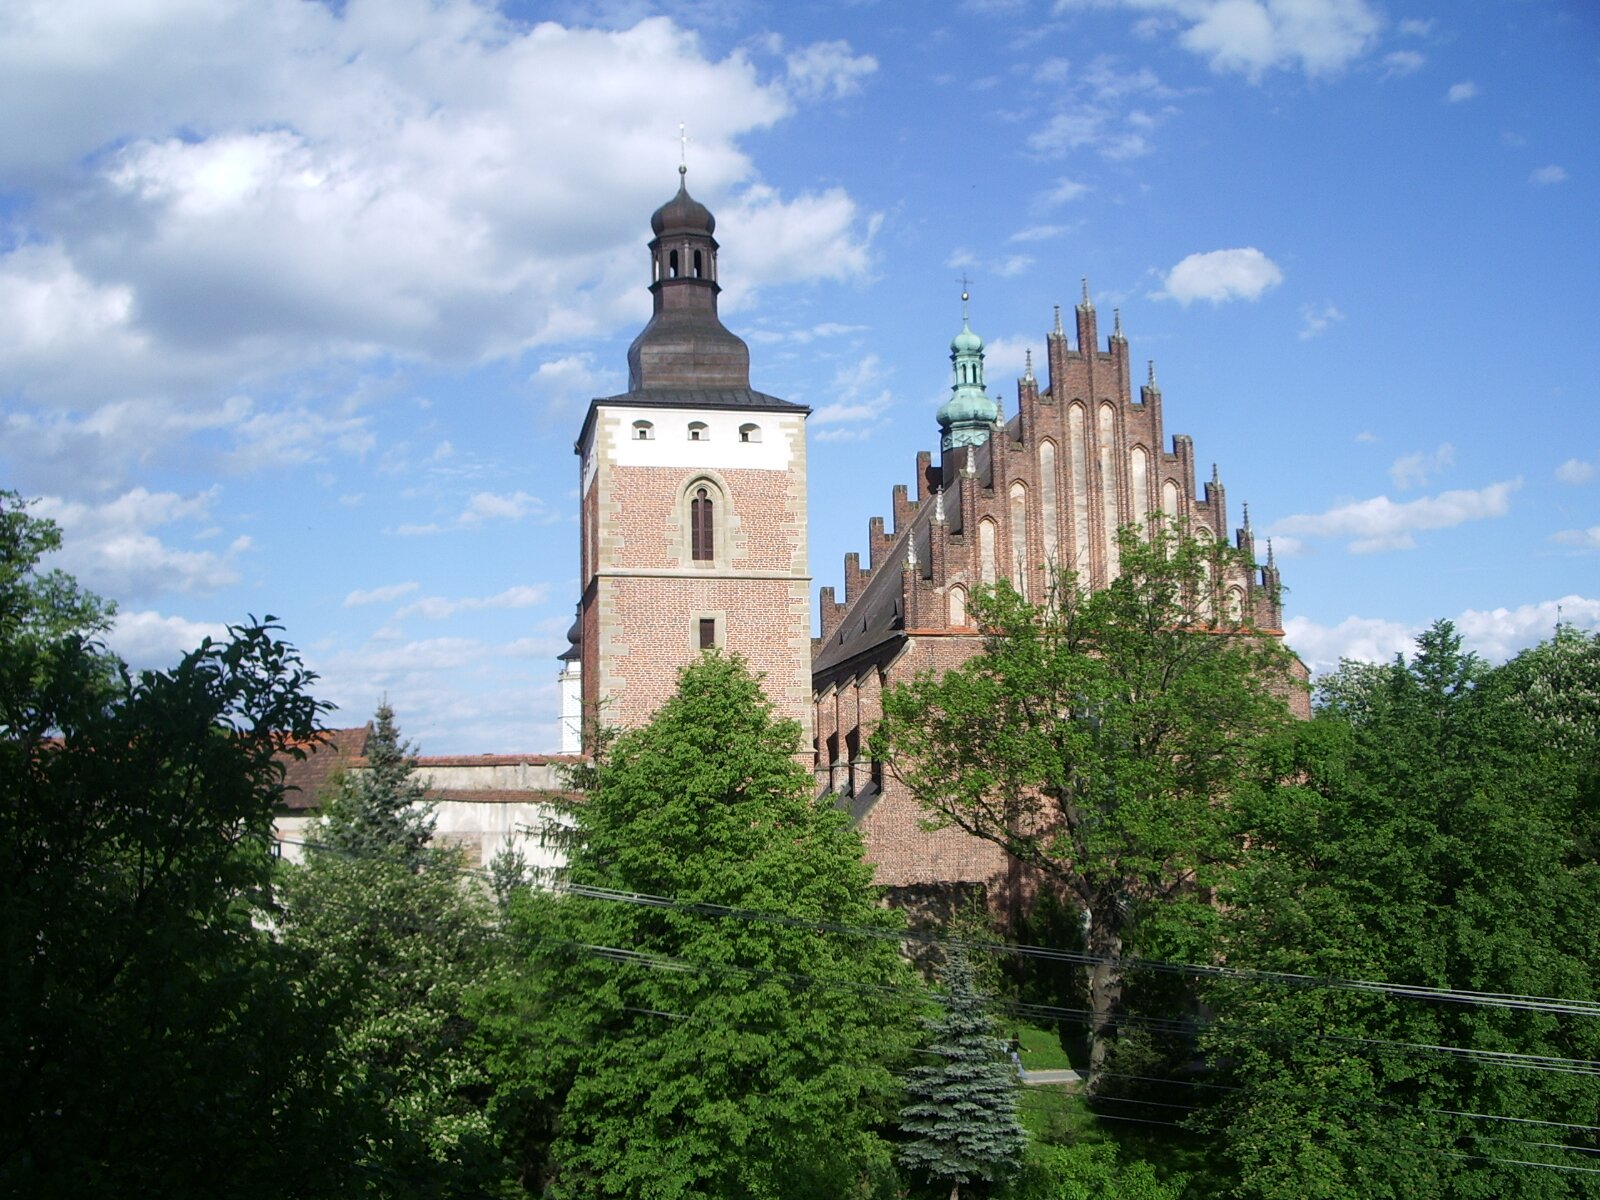 Fotografia przedstawia ceglany budynek ze strzelistym dachem i wieżą stojący pośród drzew. Na szczycie wieży widać krzyż.